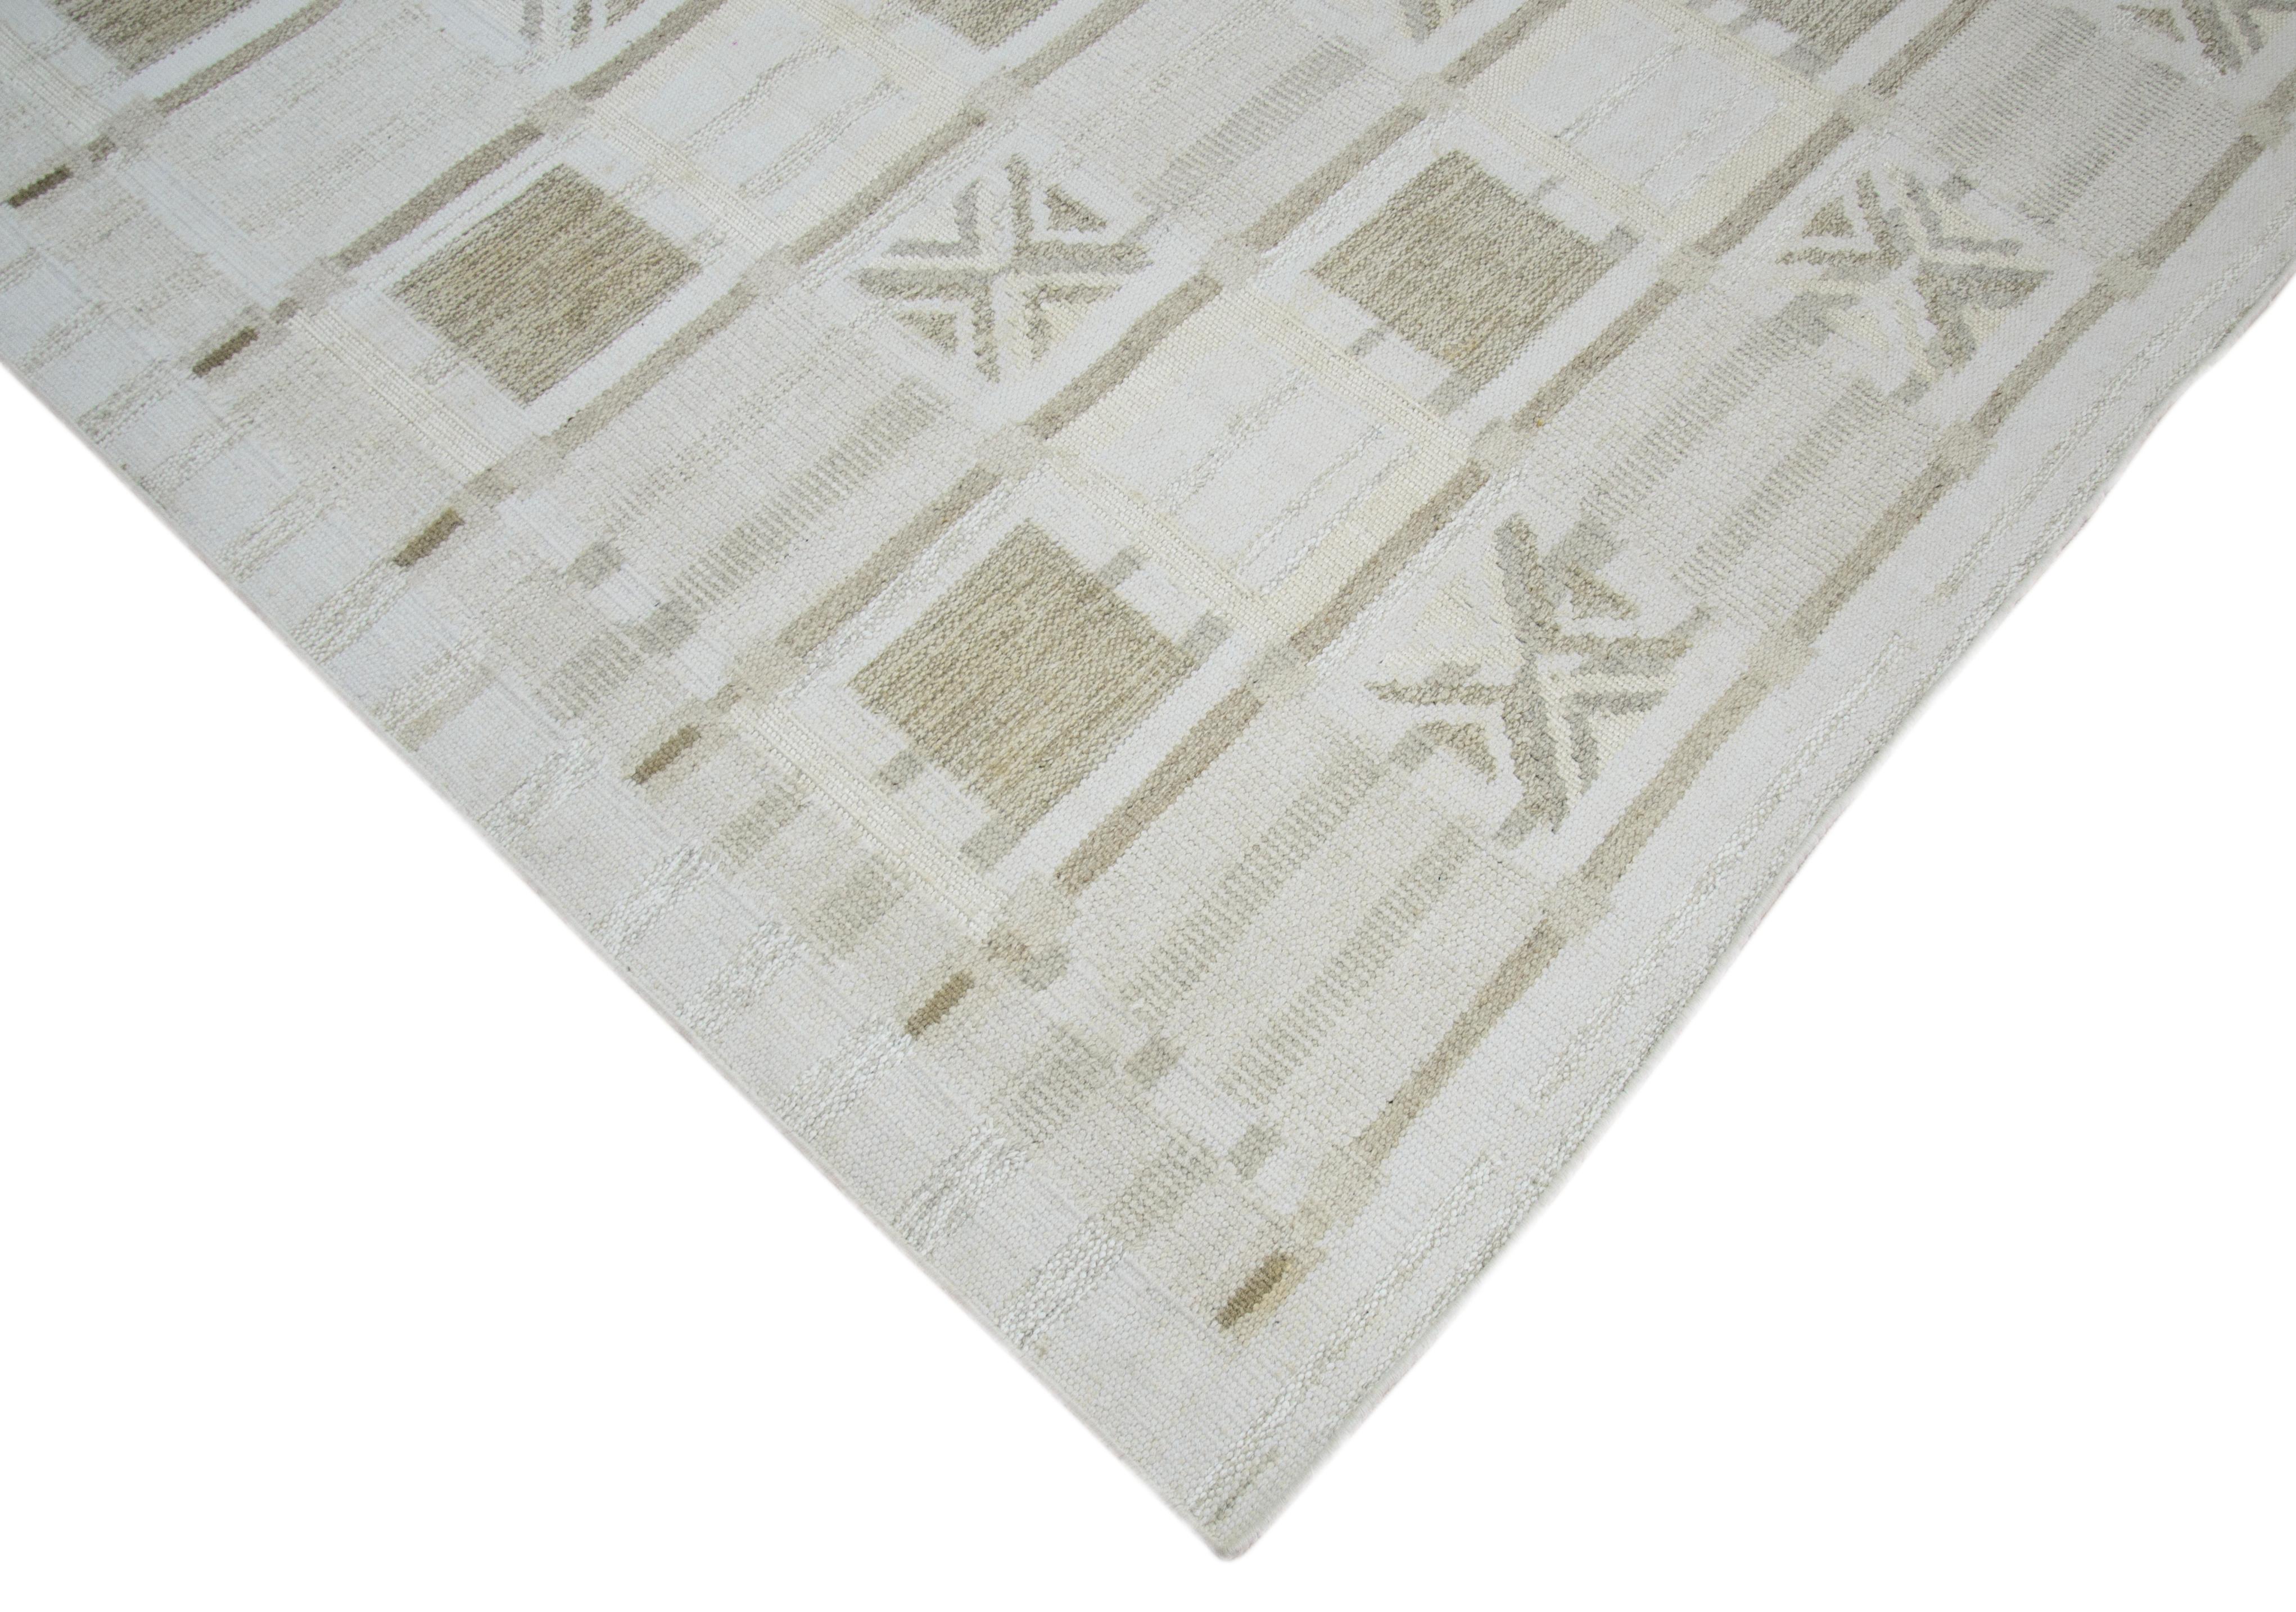 Moderner Flächenteppich im skandinavischen Design, handgewebt aus feiner Wolle und organischen Farbstoffen. Es zeigt ein exquisites weißes Feld mit Schachbrettmustern in Grau und Elfenbein, die an ein Schachbrettmuster erinnern. Dieses Stück wird in